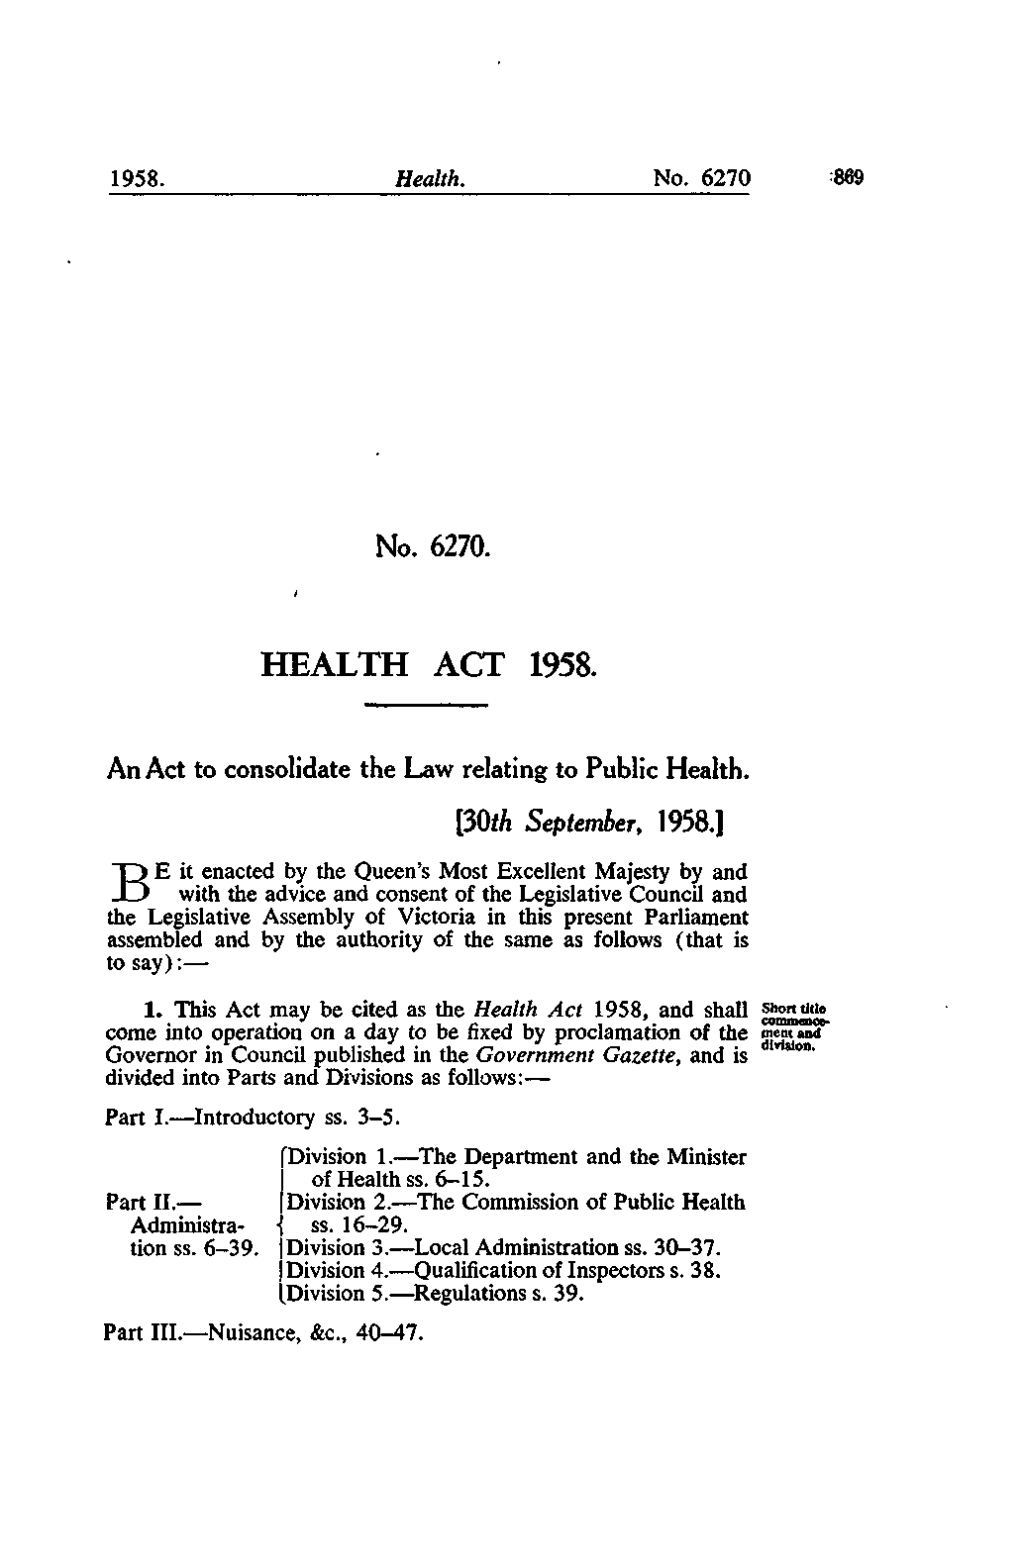 No. 6270. HEALTH ACT 1958